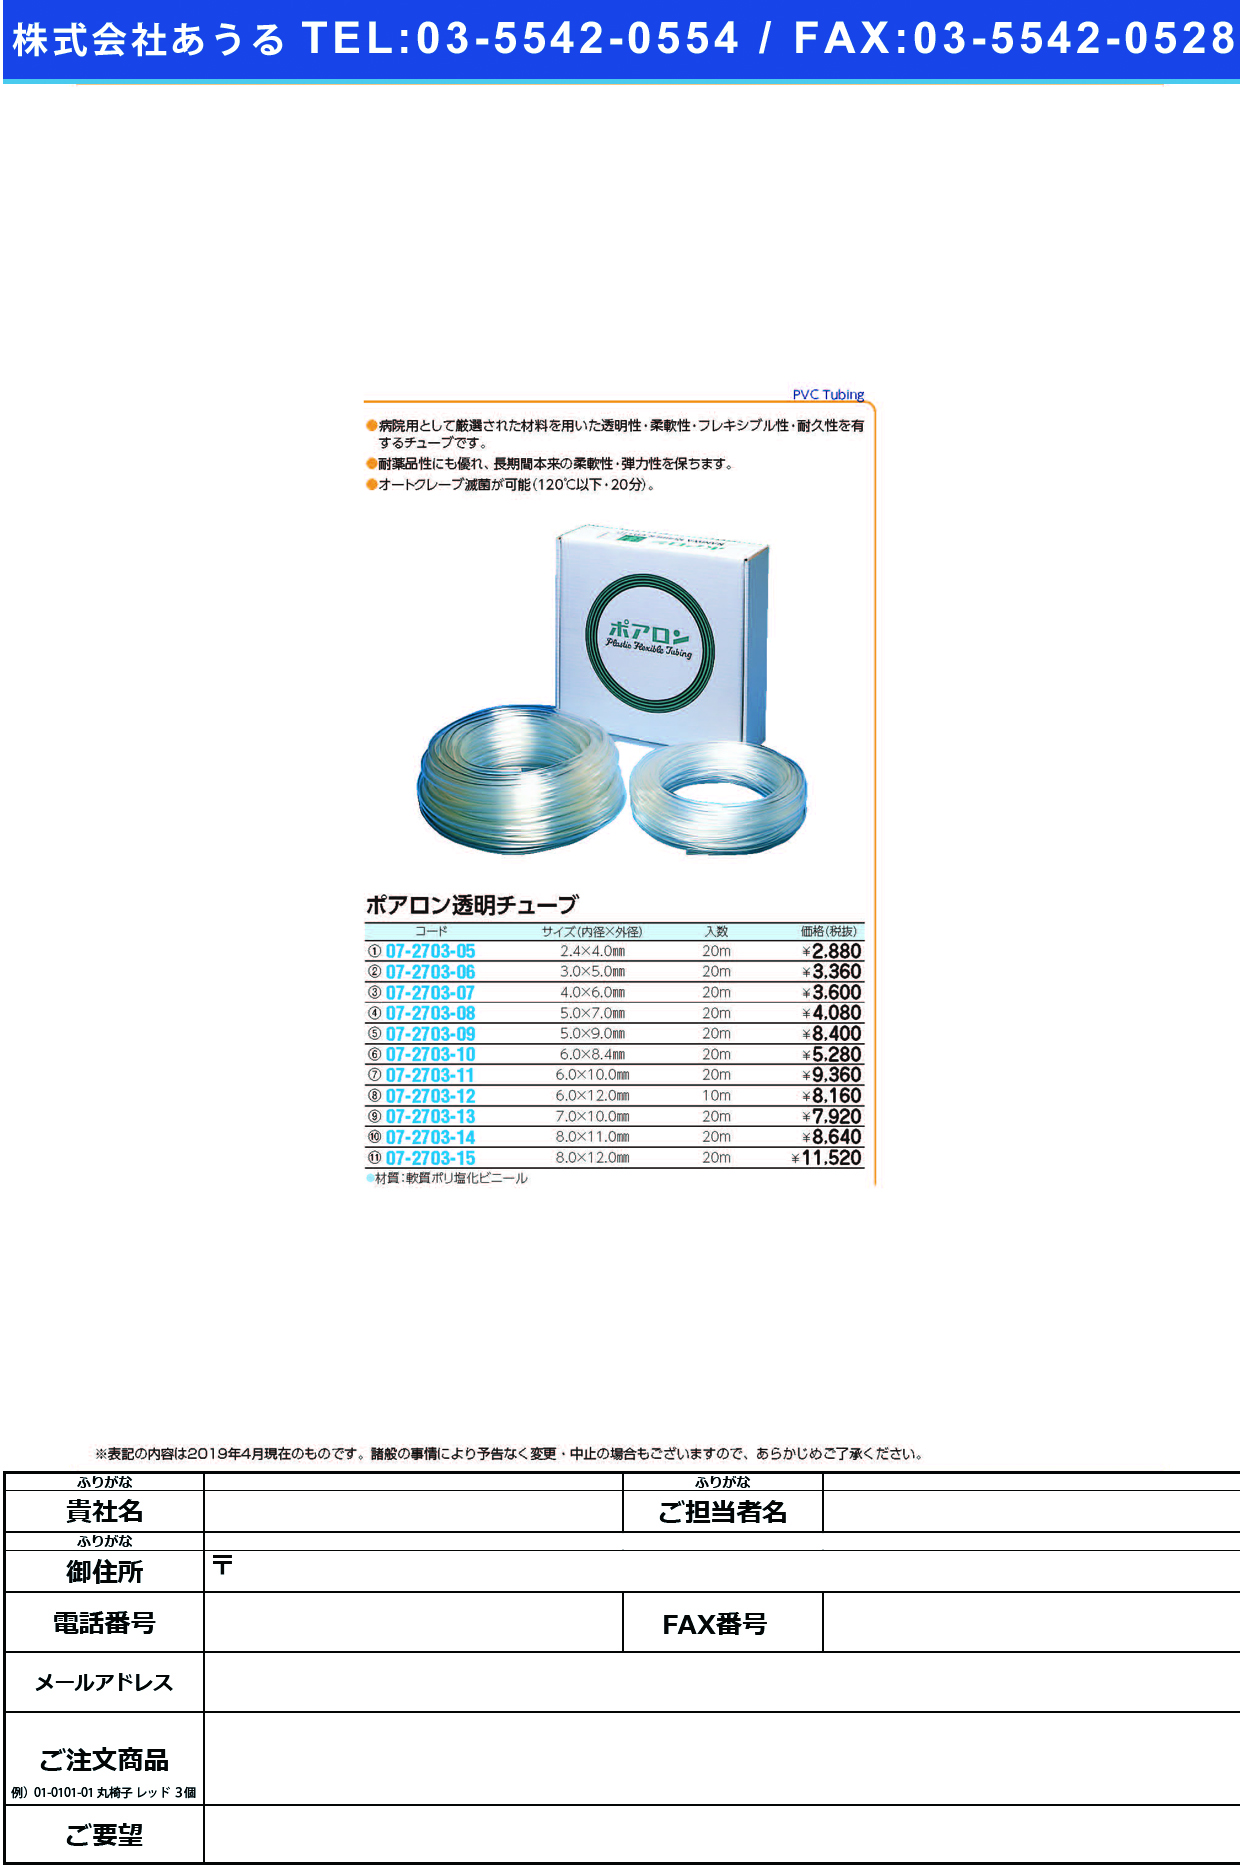 (07-2703-13)ポアロン透明チューブ 7X10MM(20Mｲﾘ) ﾎﾟｱﾛﾝﾄｳﾒｲﾁｭｰﾌﾞ【1箱単位】【2019年カタログ商品】